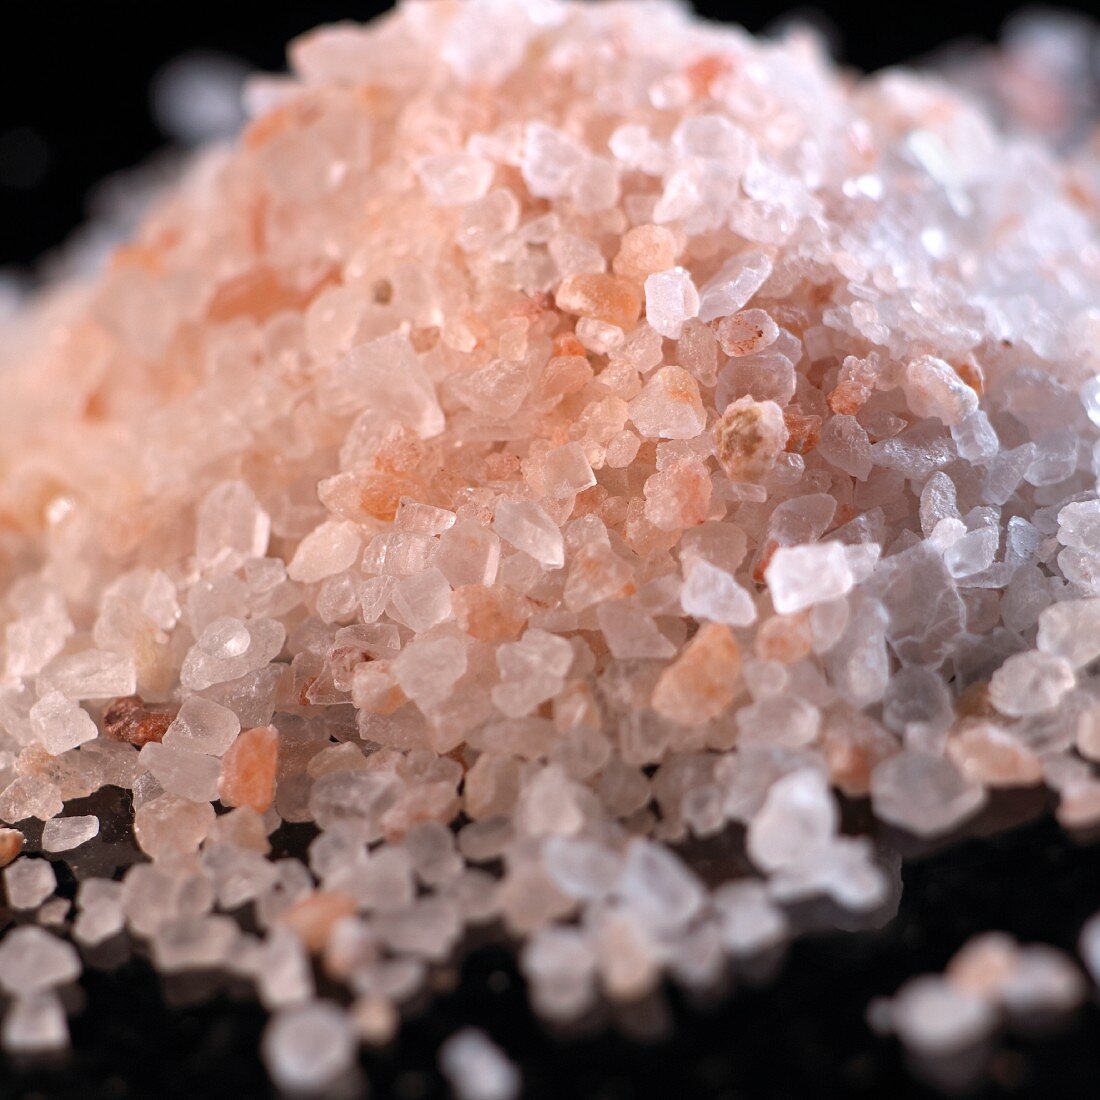 A pile of pink Himalayan salt